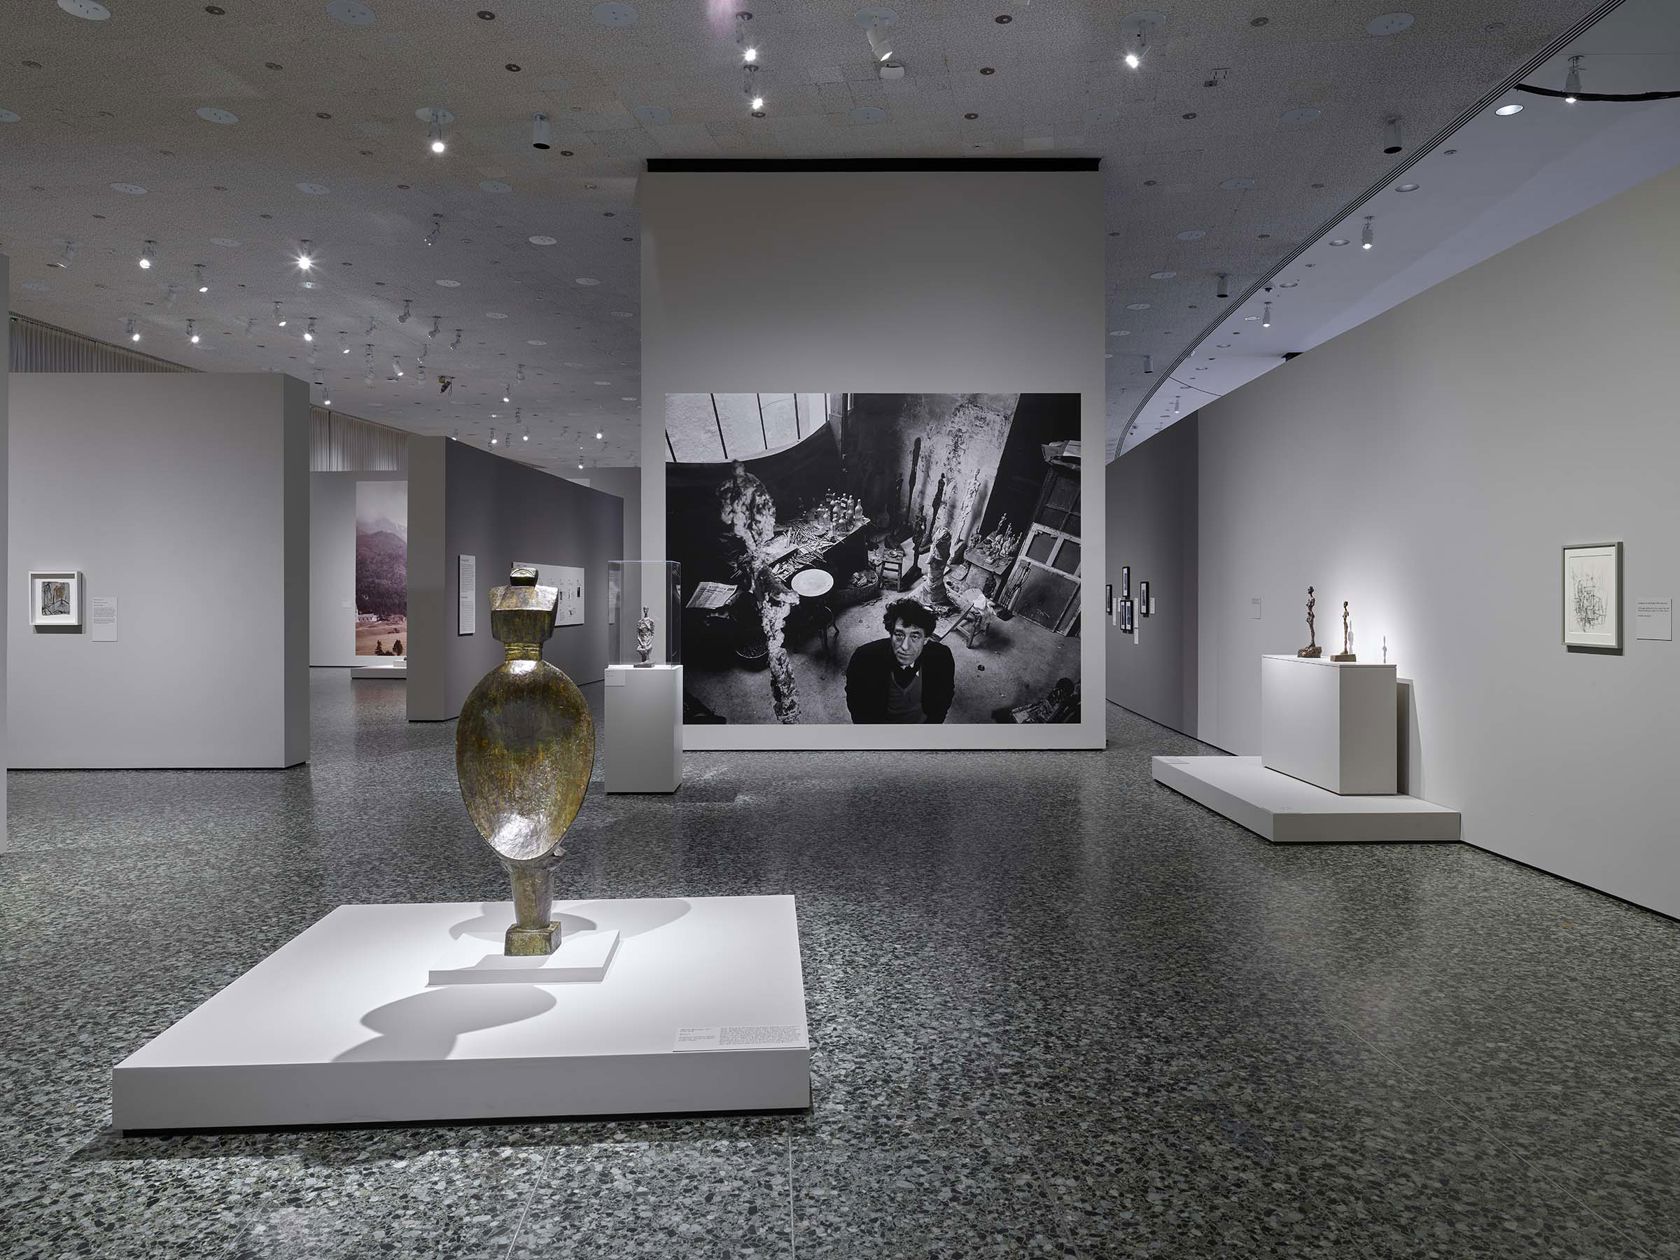 Alberto Giacometti: Toward The Ultimate Figure - SFMOMA Museum Store